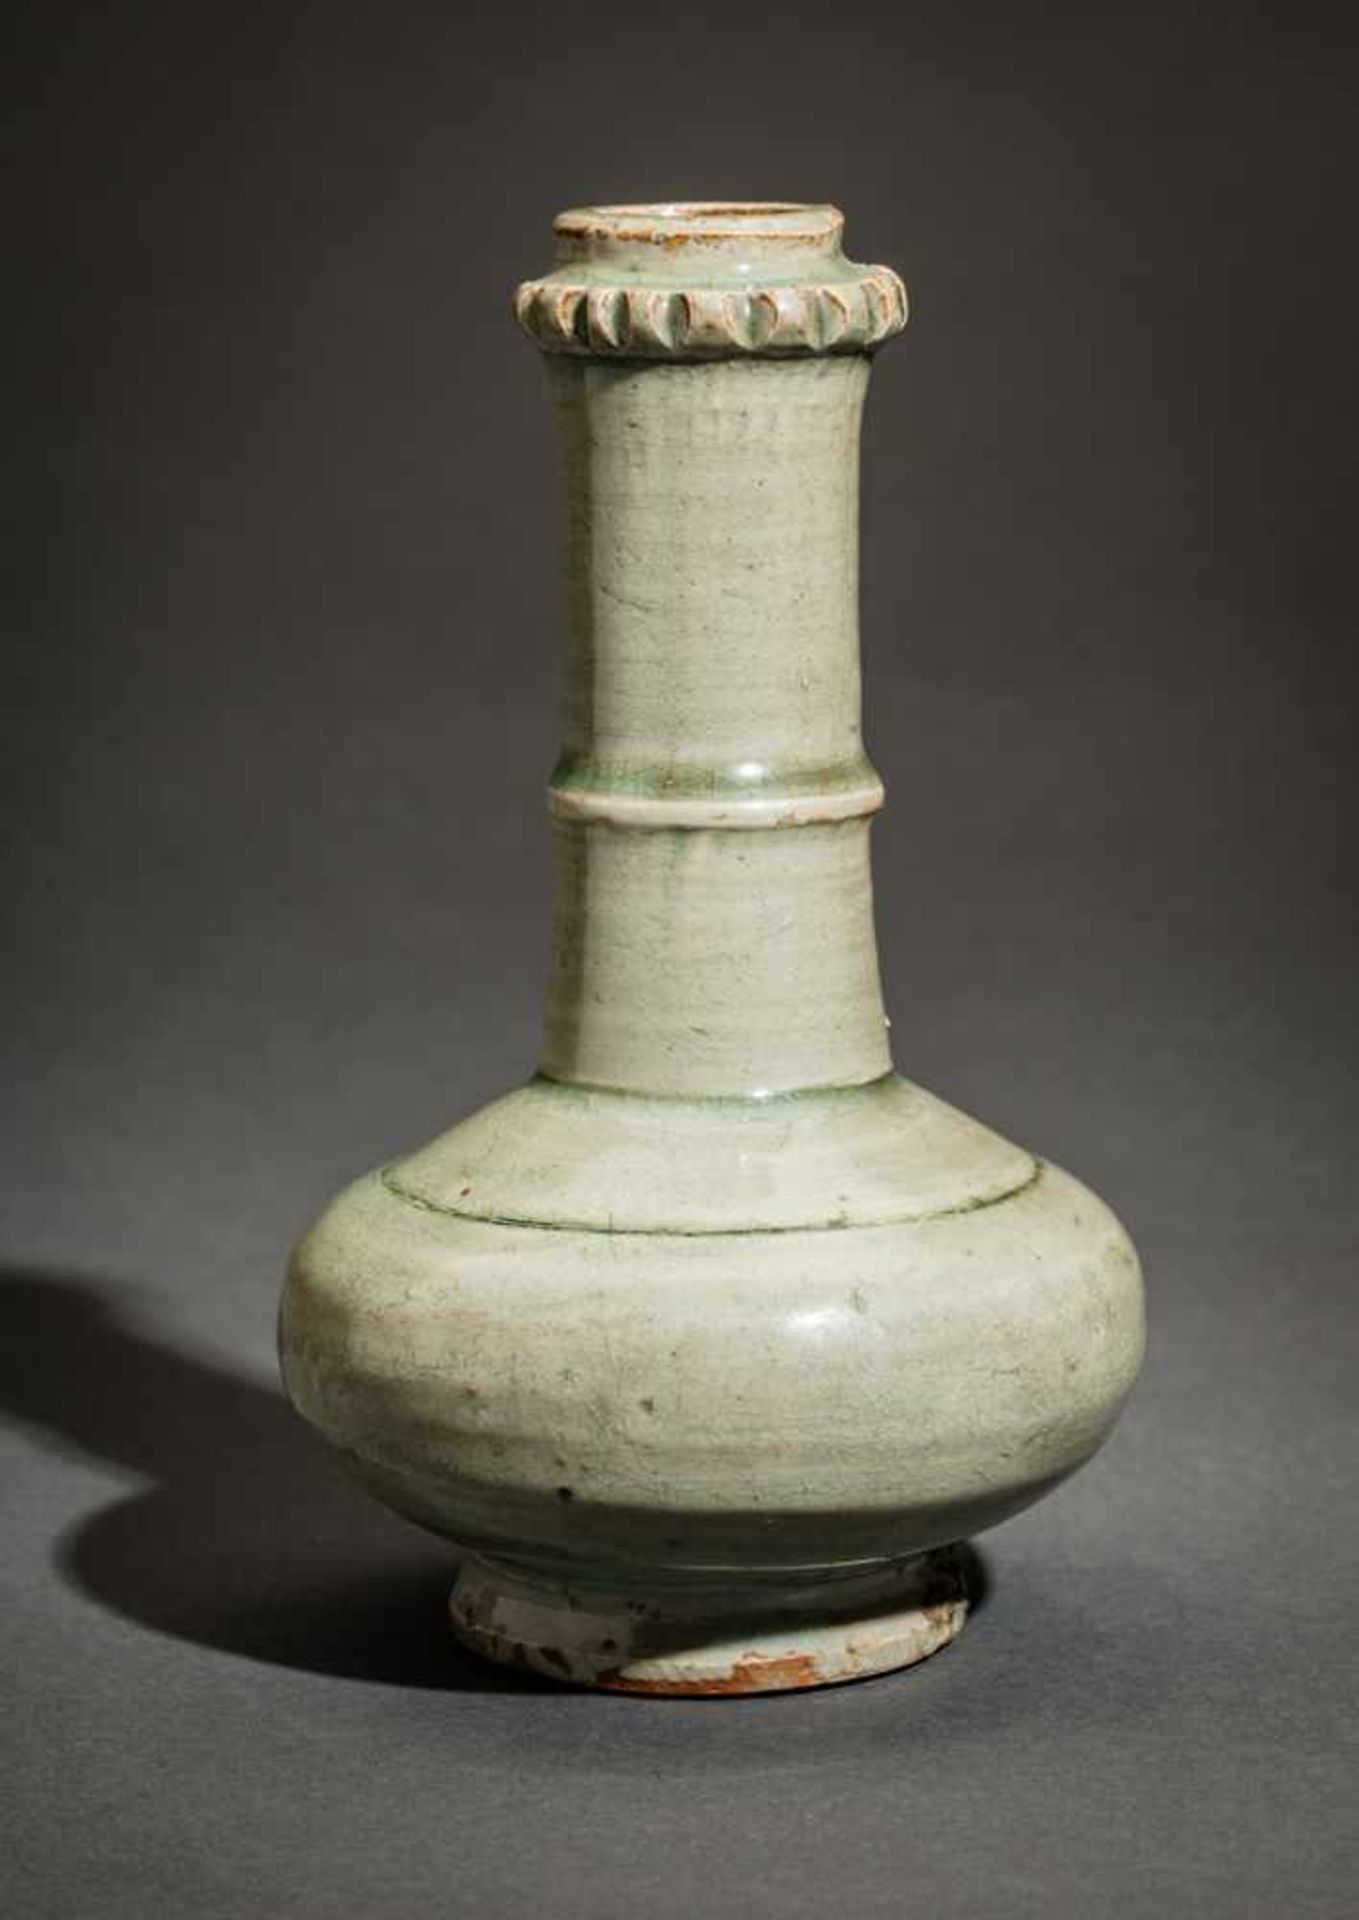 HOCHHALSIGE KLEINE VASE Glasierte Keramik, China – Südostasien. vermutlich 17. – 19. Jh.Eine - Image 2 of 4